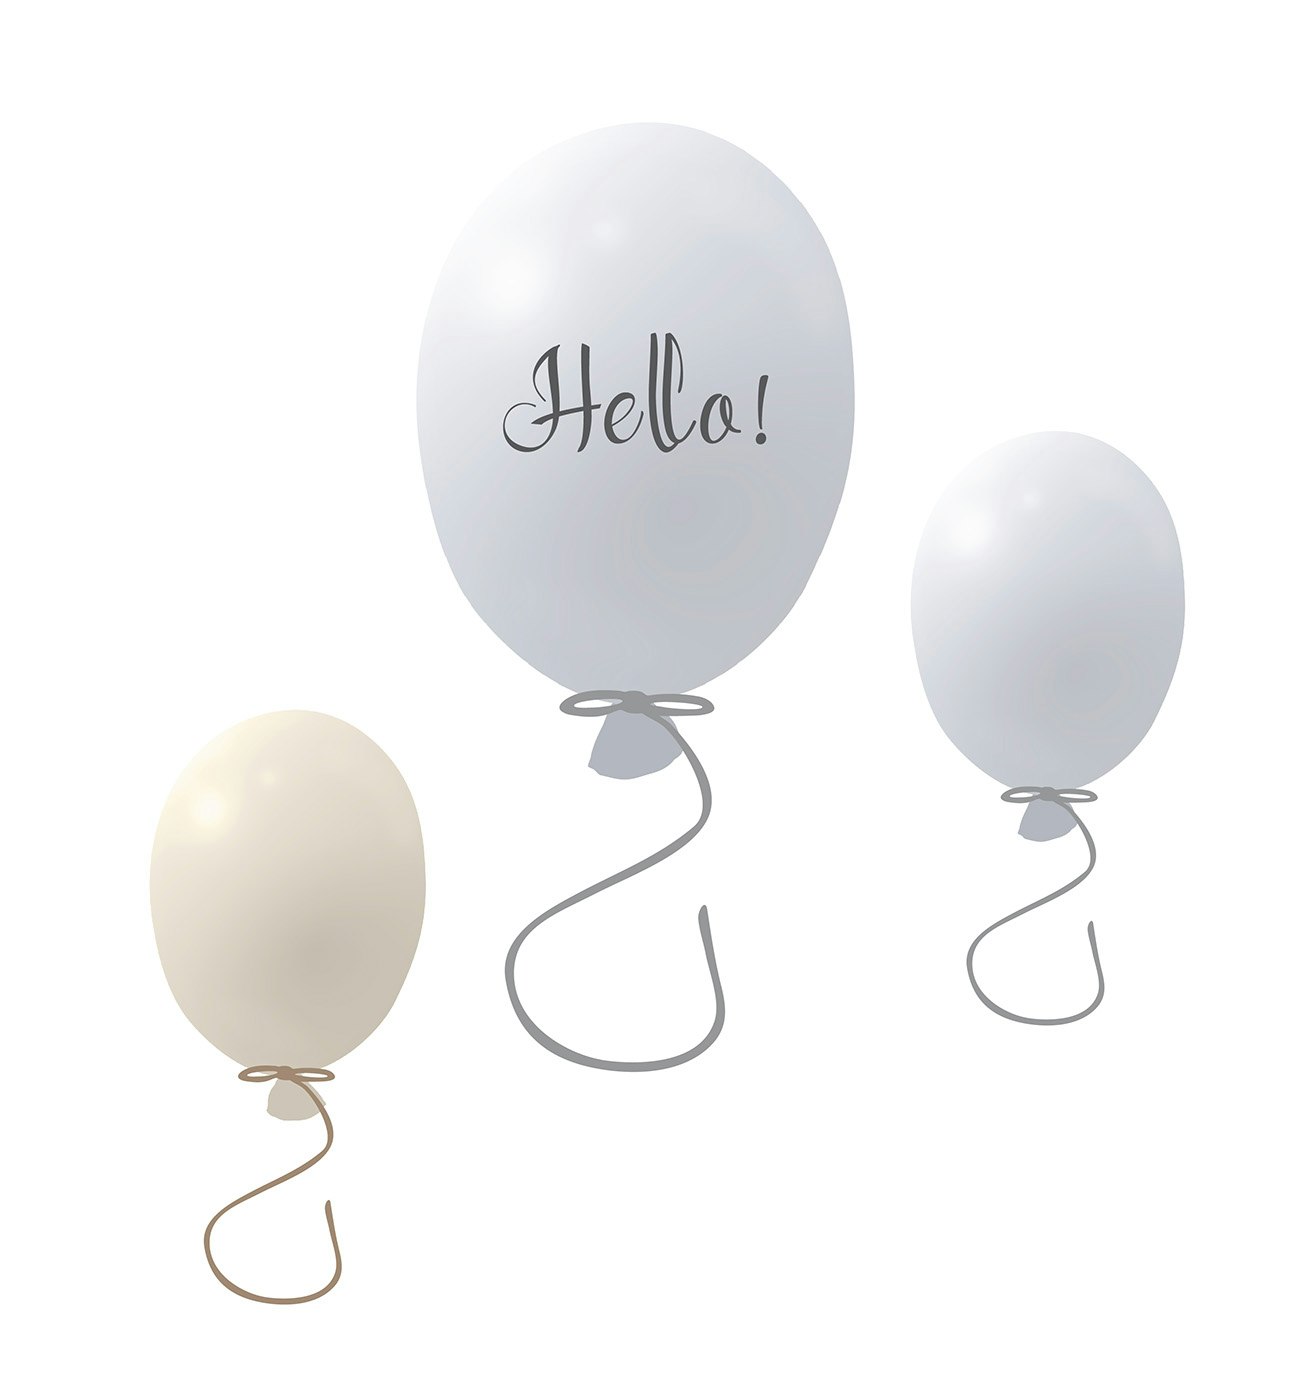 Väggklistermärke partyballonger 3-pack, grey Väggklistermärke bestående av en stor grå ballong med texten Hello och två mindre ballonger